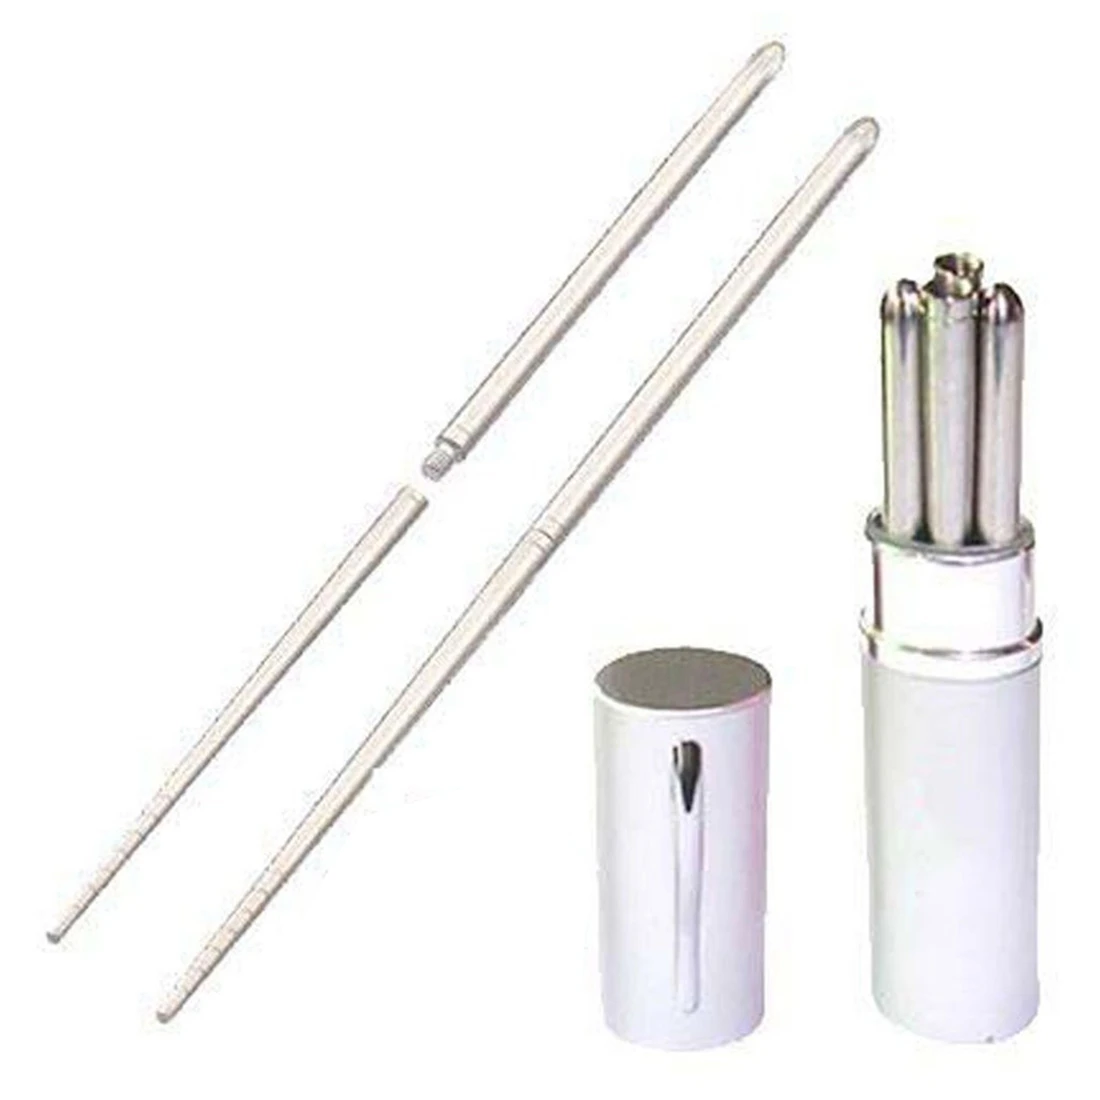 Алюминиевая ручка форма оболочки из нержавеющей стали складной для путешествий для палочек, серебро - Цвет: Silver